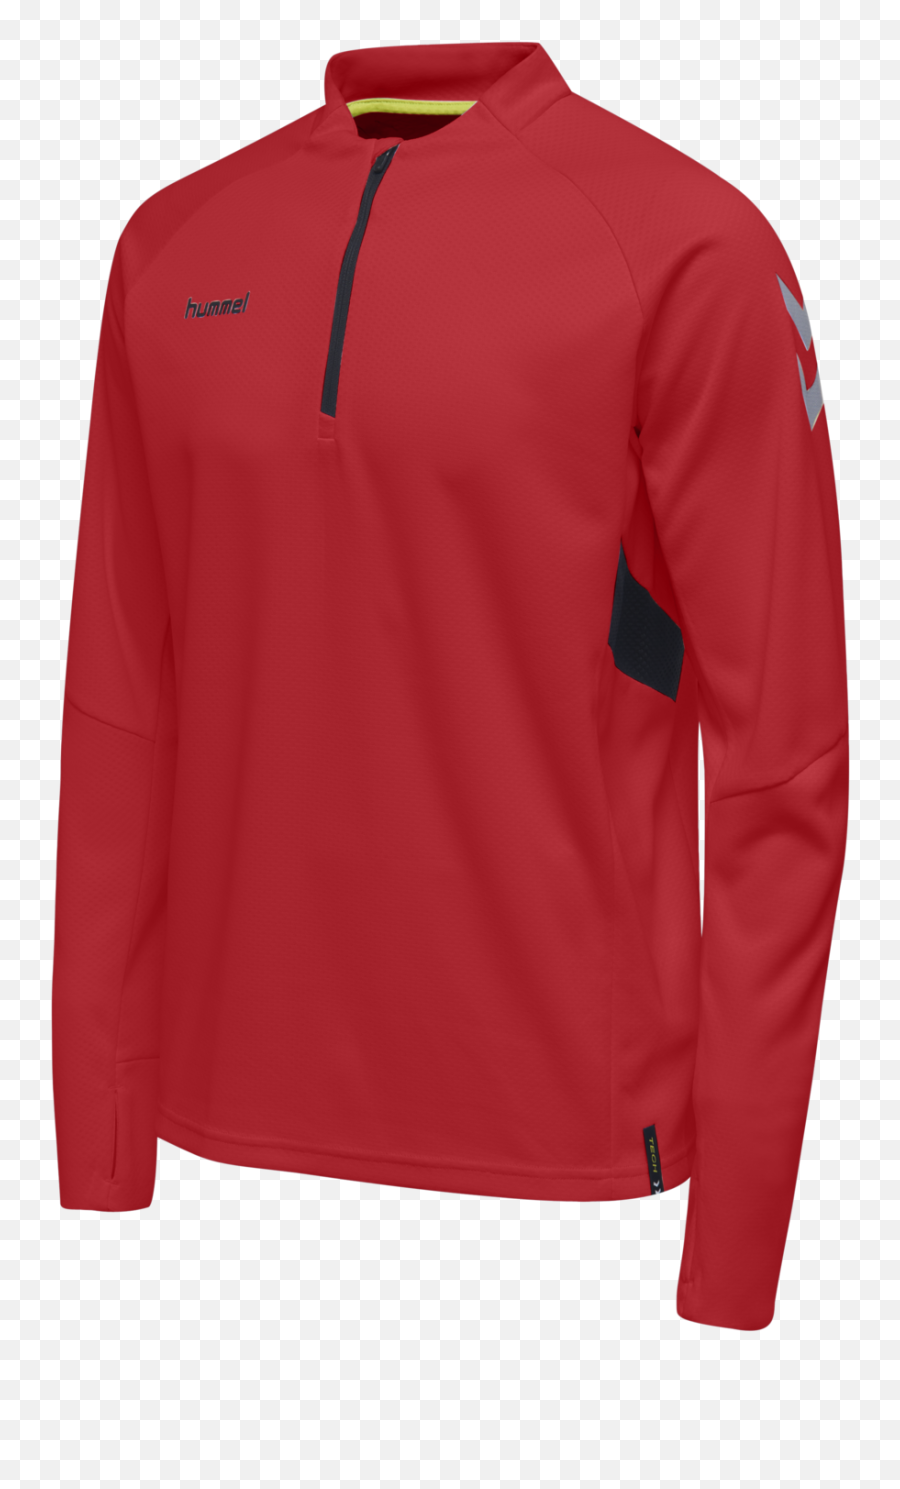 Red Sweatshirt For Kidsmobilibiancoit - Half Zip Sport Sweatshirt Png,Hummel Icon Jacket